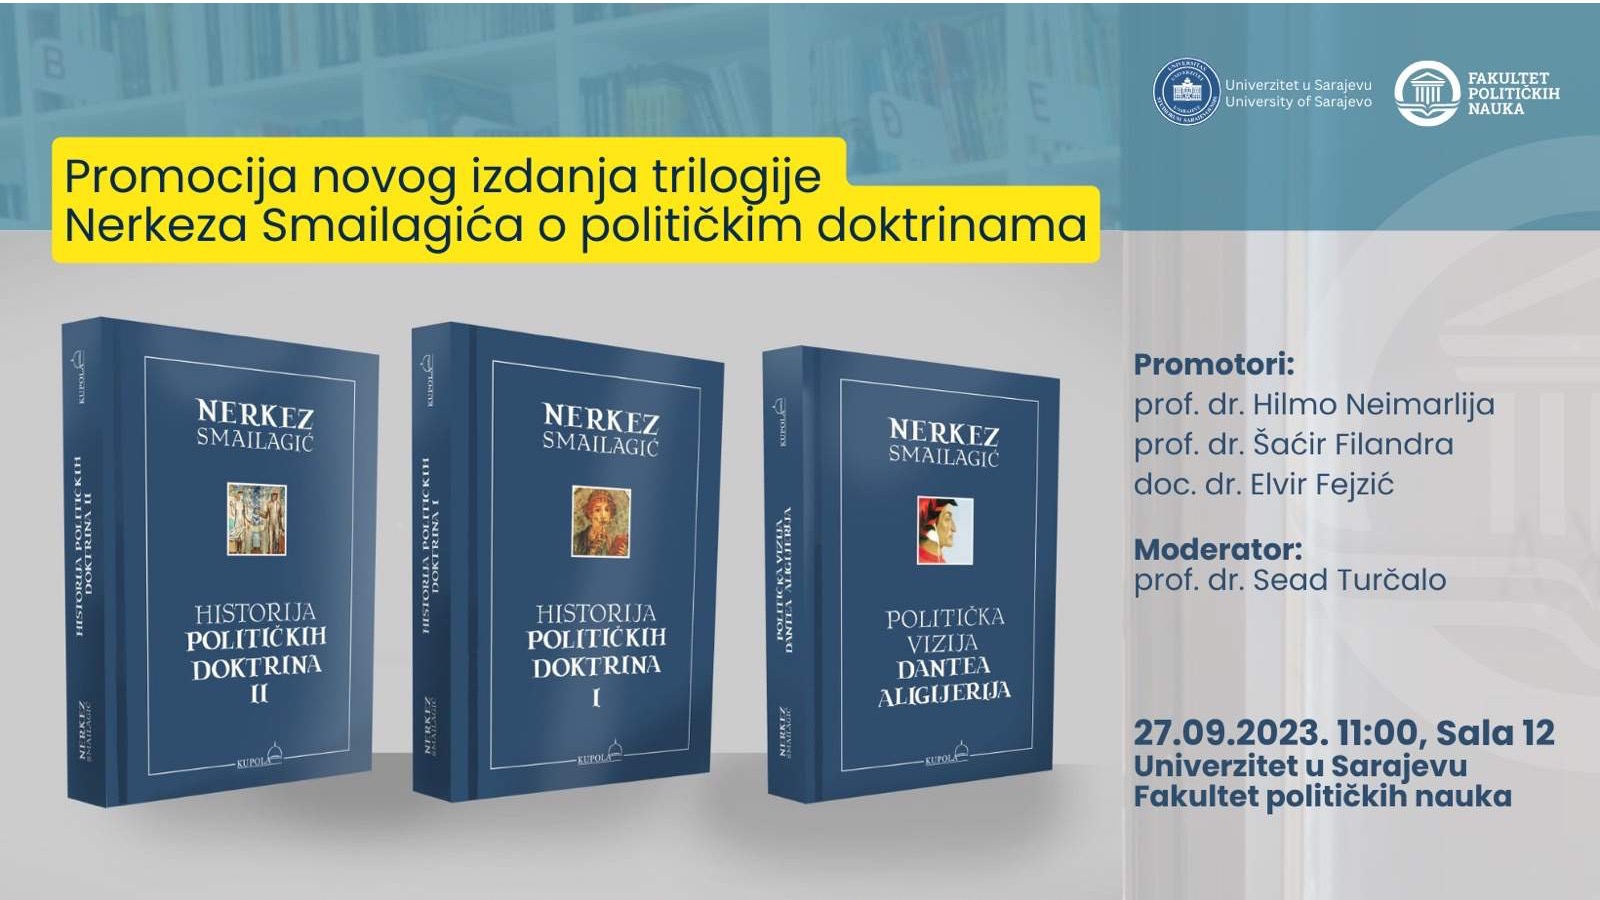 Promocija novog izdanja trilogije Nerkeza Smailagića o političkim doktrinama 27. septembra